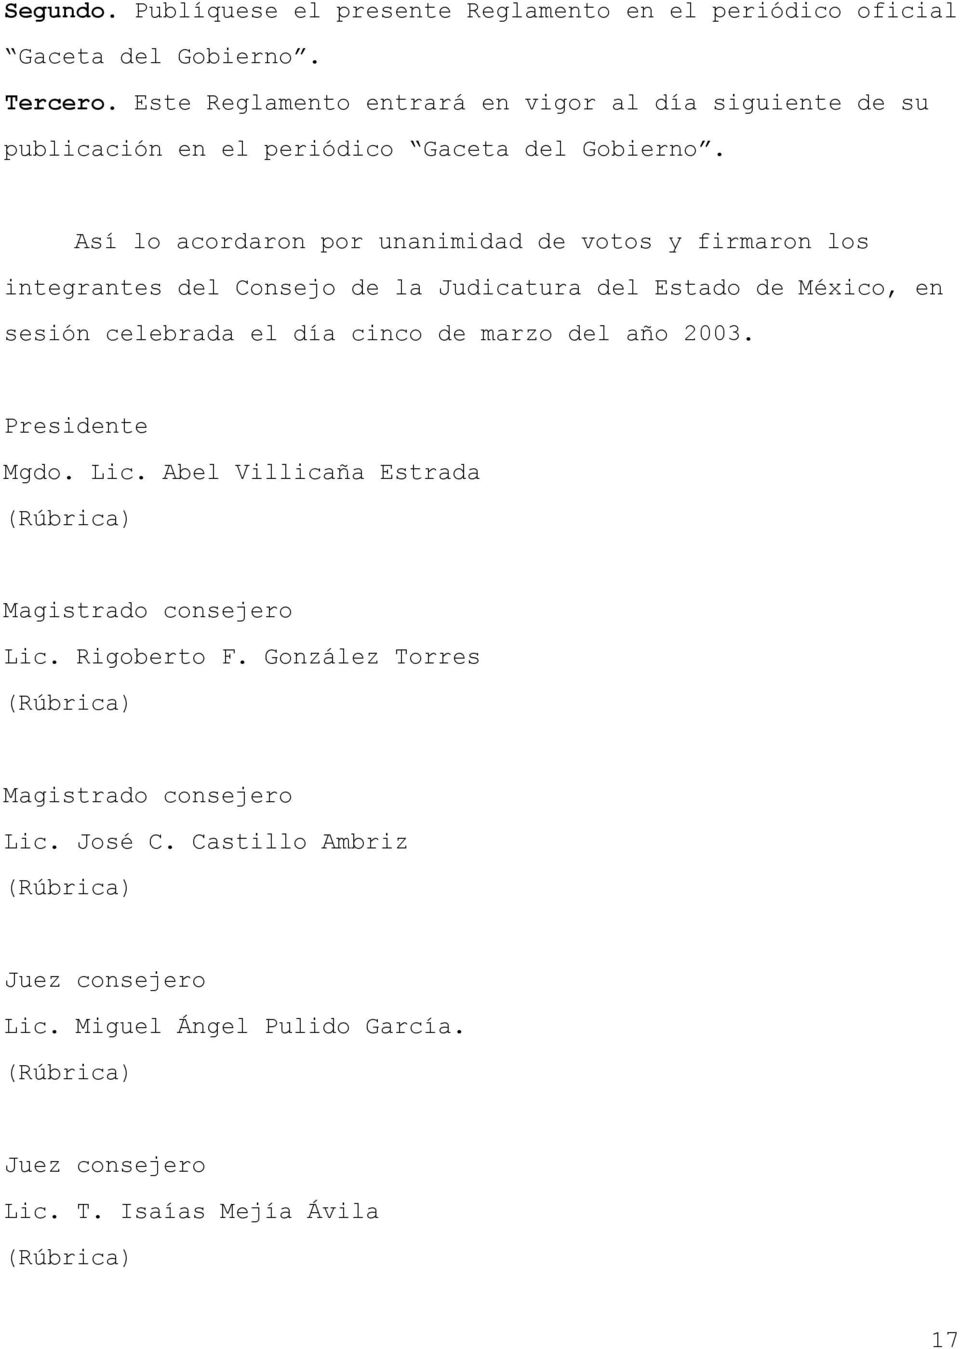 Así lo acordaron por unanimidad de votos y firmaron los integrantes del Consejo de la Judicatura del Estado de México, en sesión celebrada el día cinco de marzo del